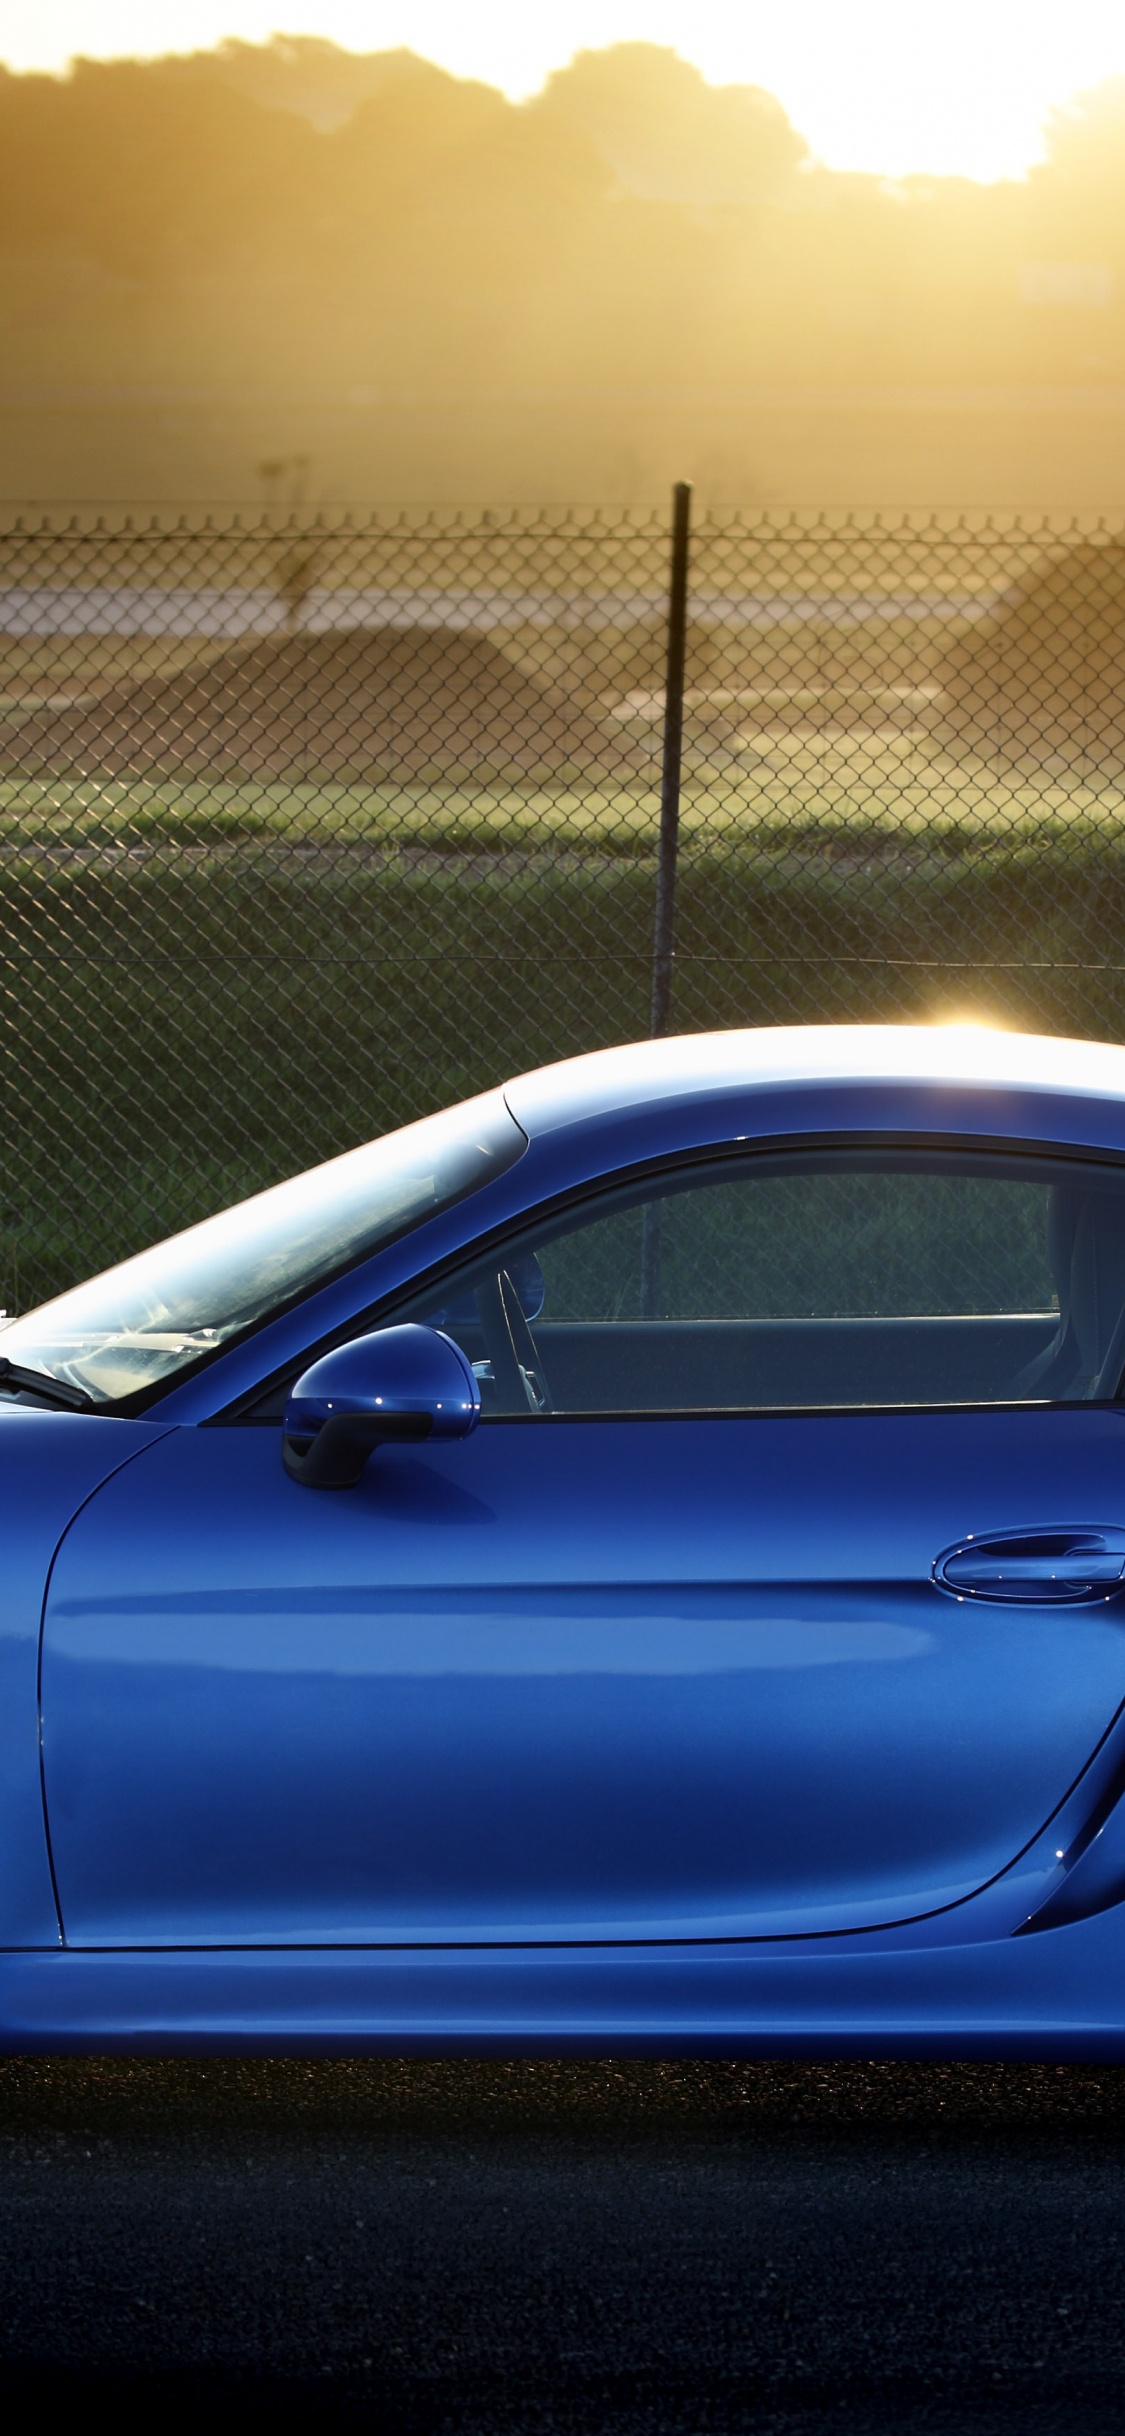 Porsche 911 Bleue Garée Près D'une Clôture en Métal Gris Pendant la Journée. Wallpaper in 1125x2436 Resolution